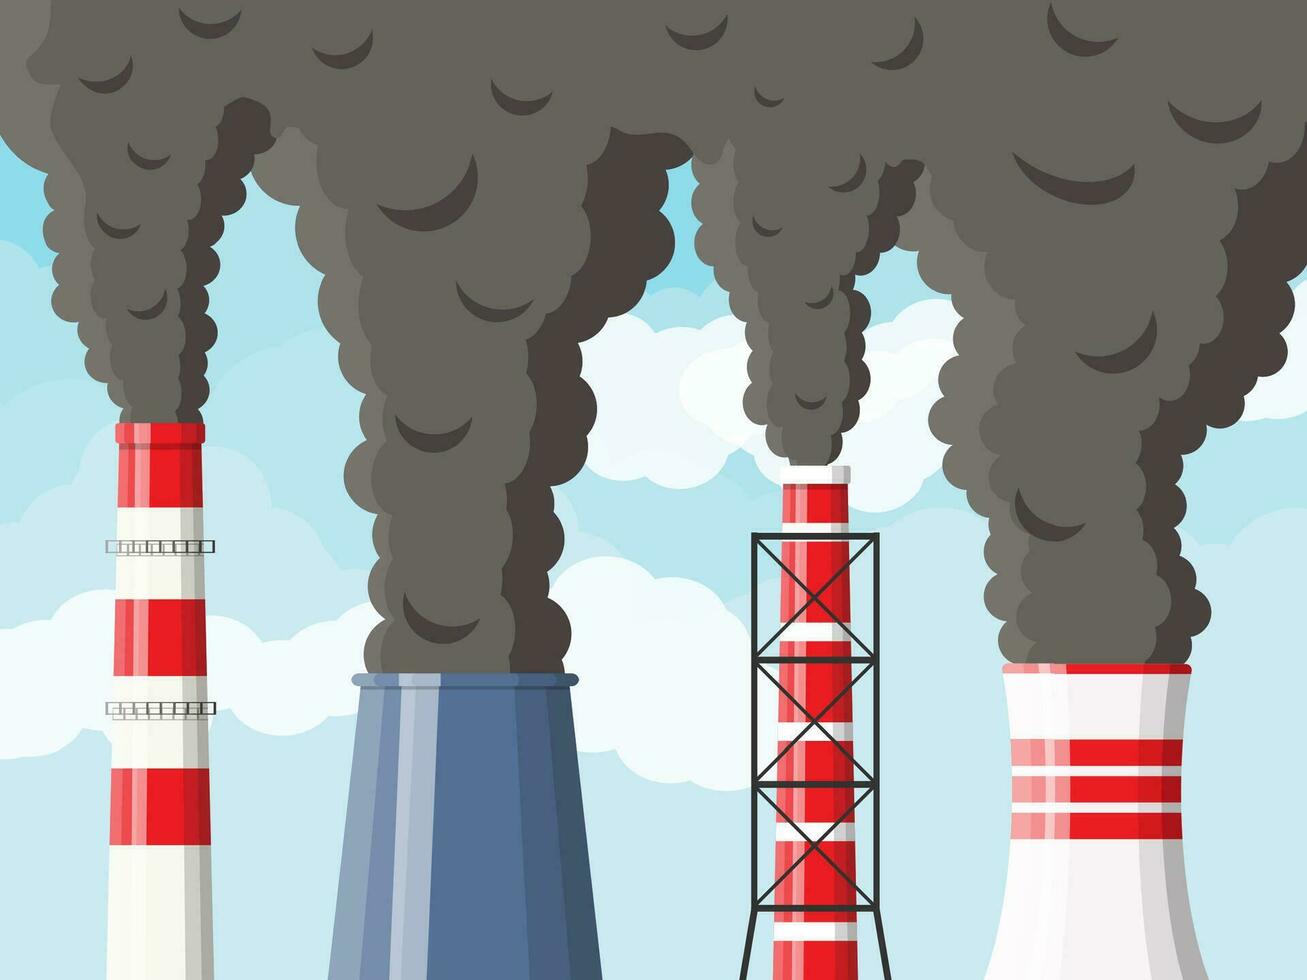 de fumar fábrica tubería en contra claro cielo con nubes planta tubo con oscuro fumar. carbón dióxido emisiones ambiente contaminación. contaminación de ambiente co2 vector ilustración en plano estilo